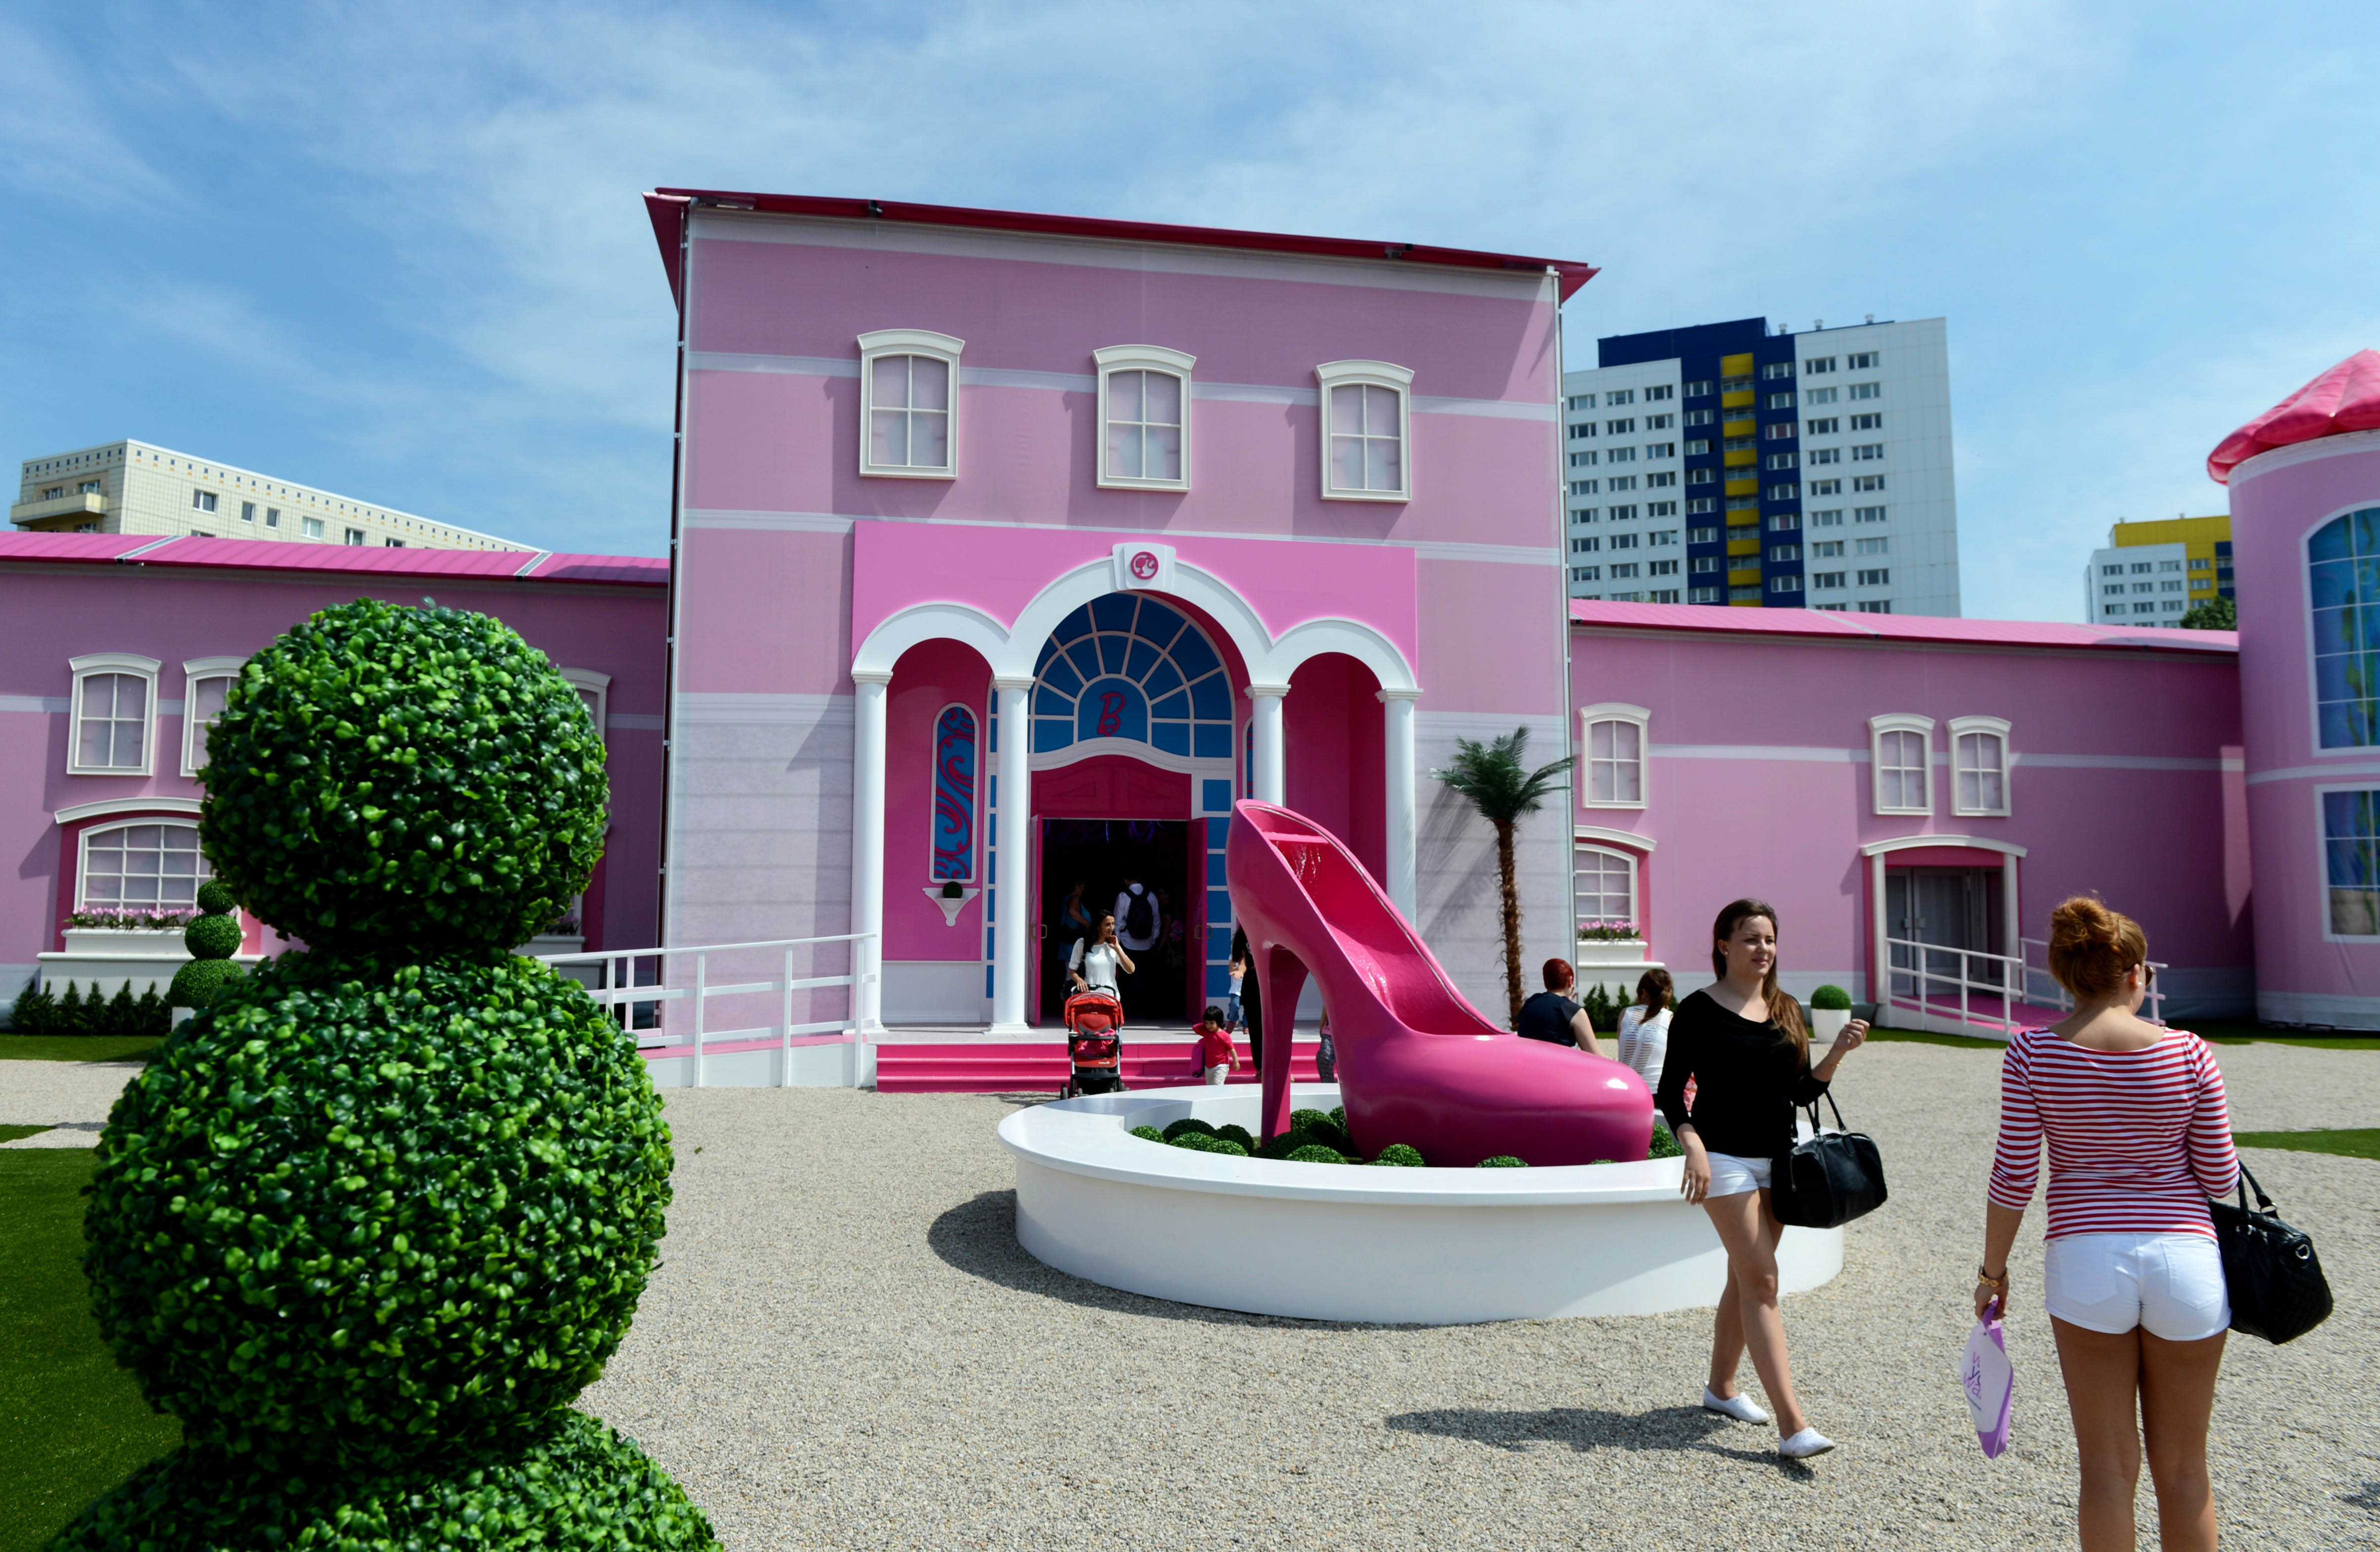 Барби дом 1. Дом музей Барби в Берлине. Розовый домик Дрим Хаус. Домик Барби Дримхаус. Дом мечты Барби настоящий.